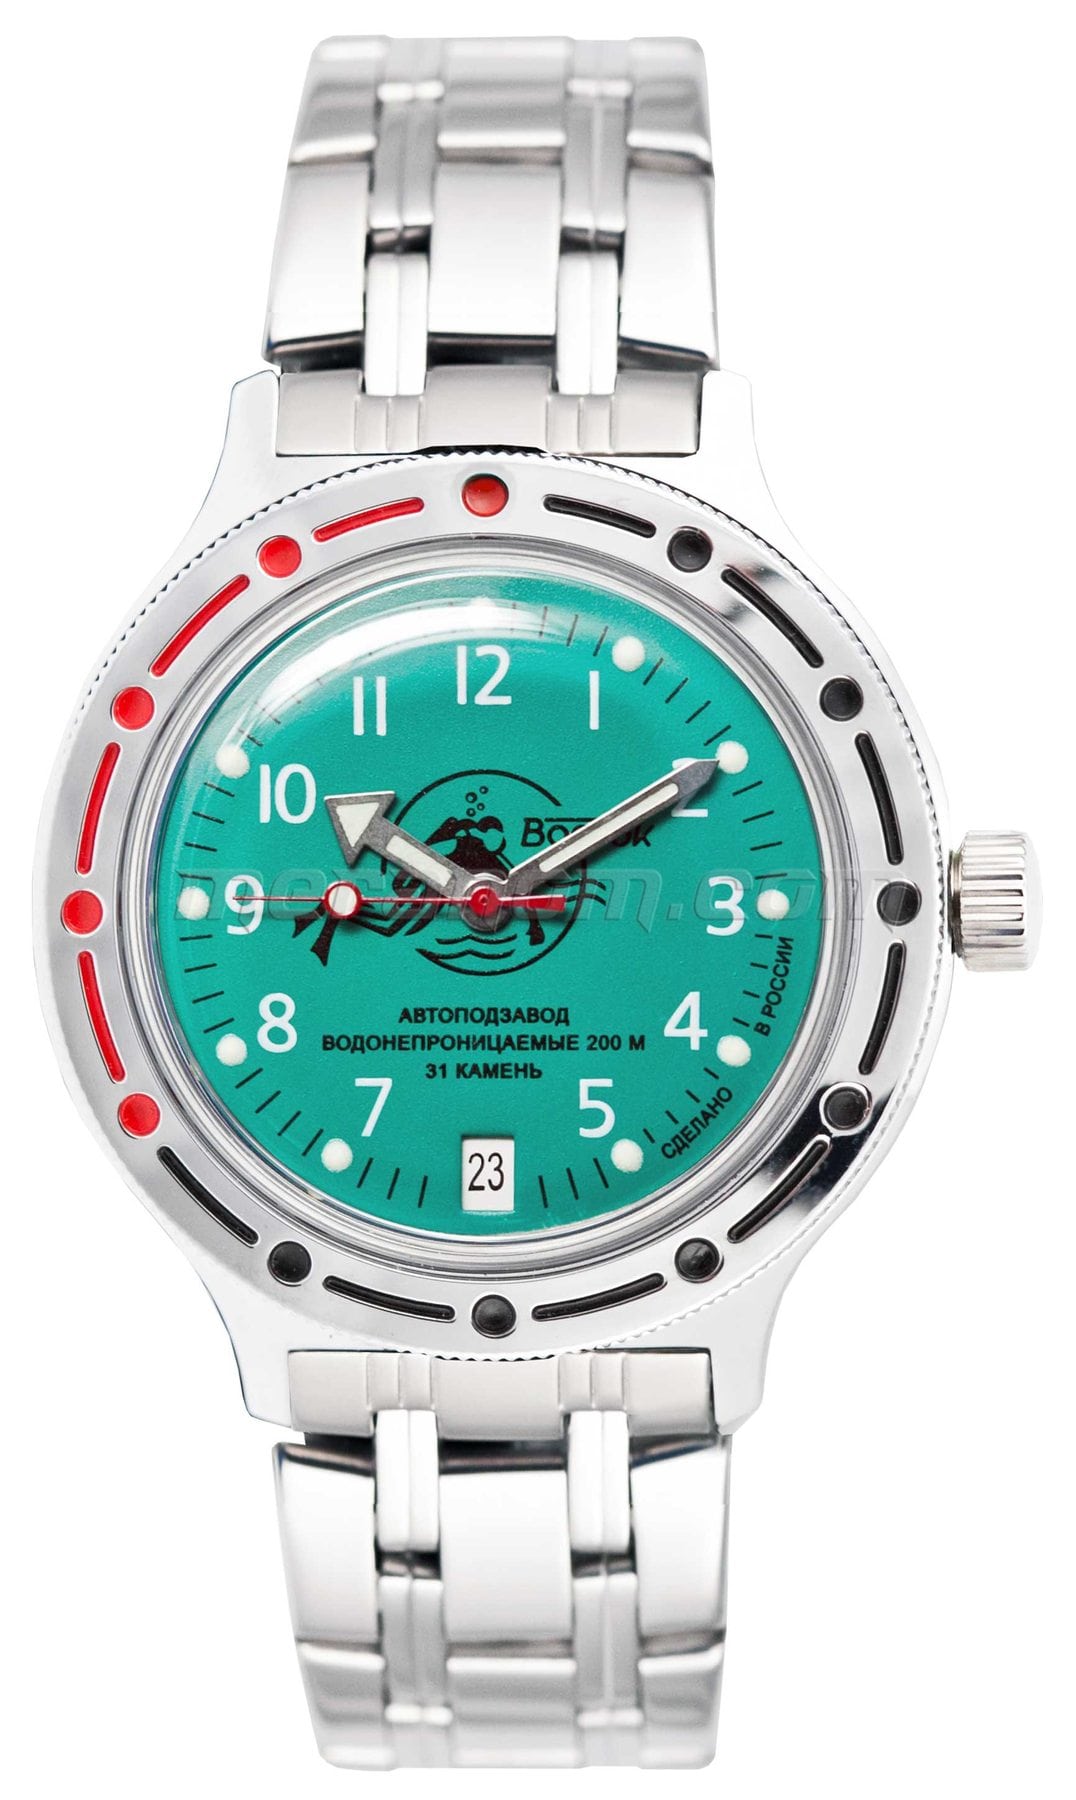 Vostok relojes Amphibian Clásico para comprar. foto, especificaciones,